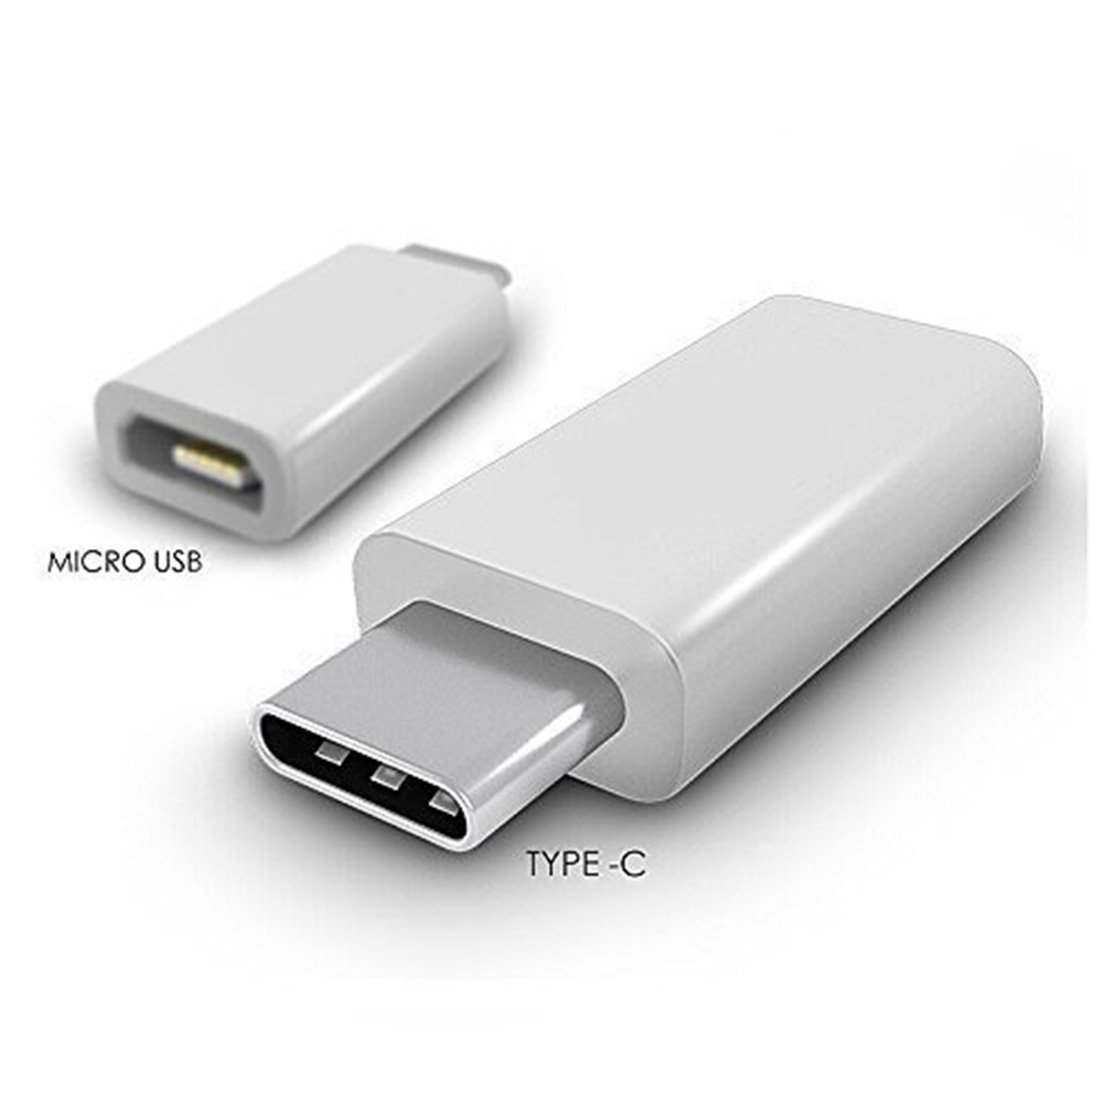 2 тайпси. Переходник USB 2.0 Type a male to Type c. USB C Micro USB. Переходник микро USB Type c OTG переходник. Микро юсб Type c.